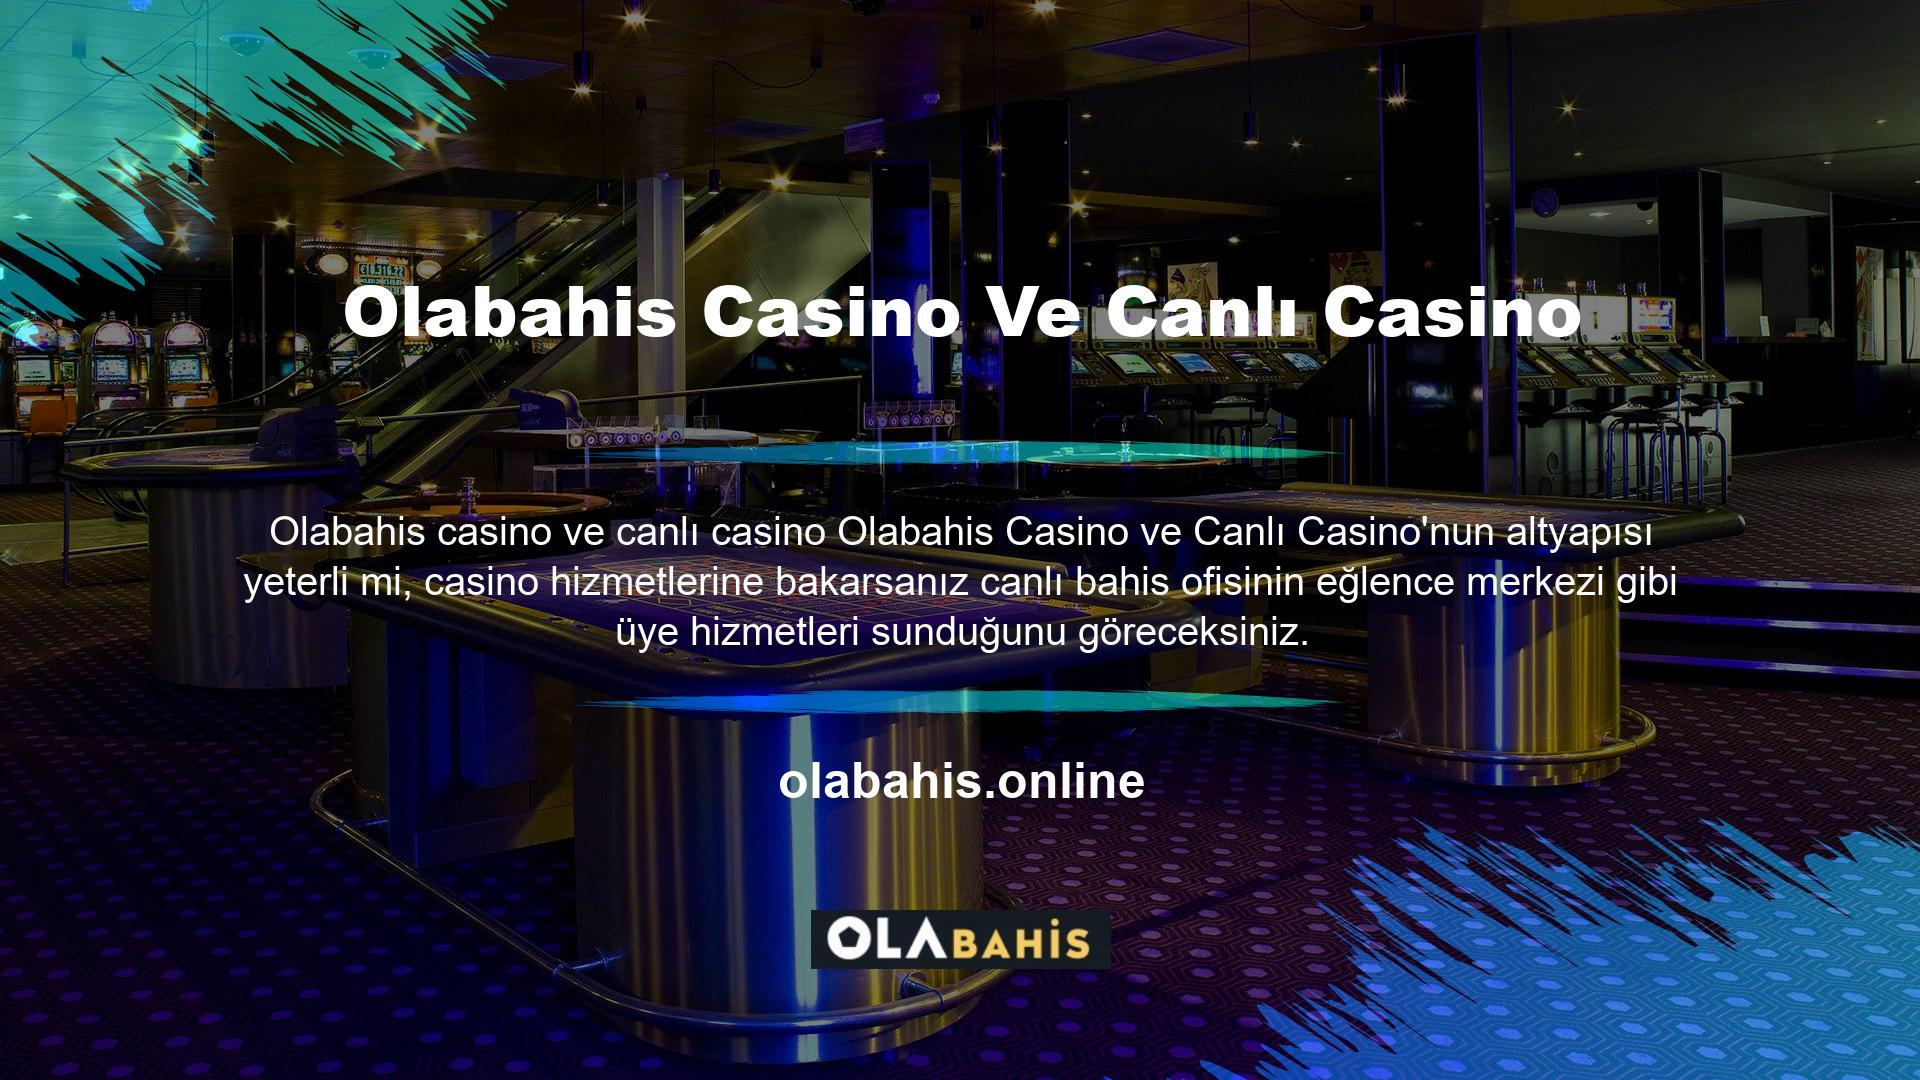 En iyi altyapı şirketlerinin desteğiyle, web sitesi çeşitli casino oyunlarını entegre etmektedir